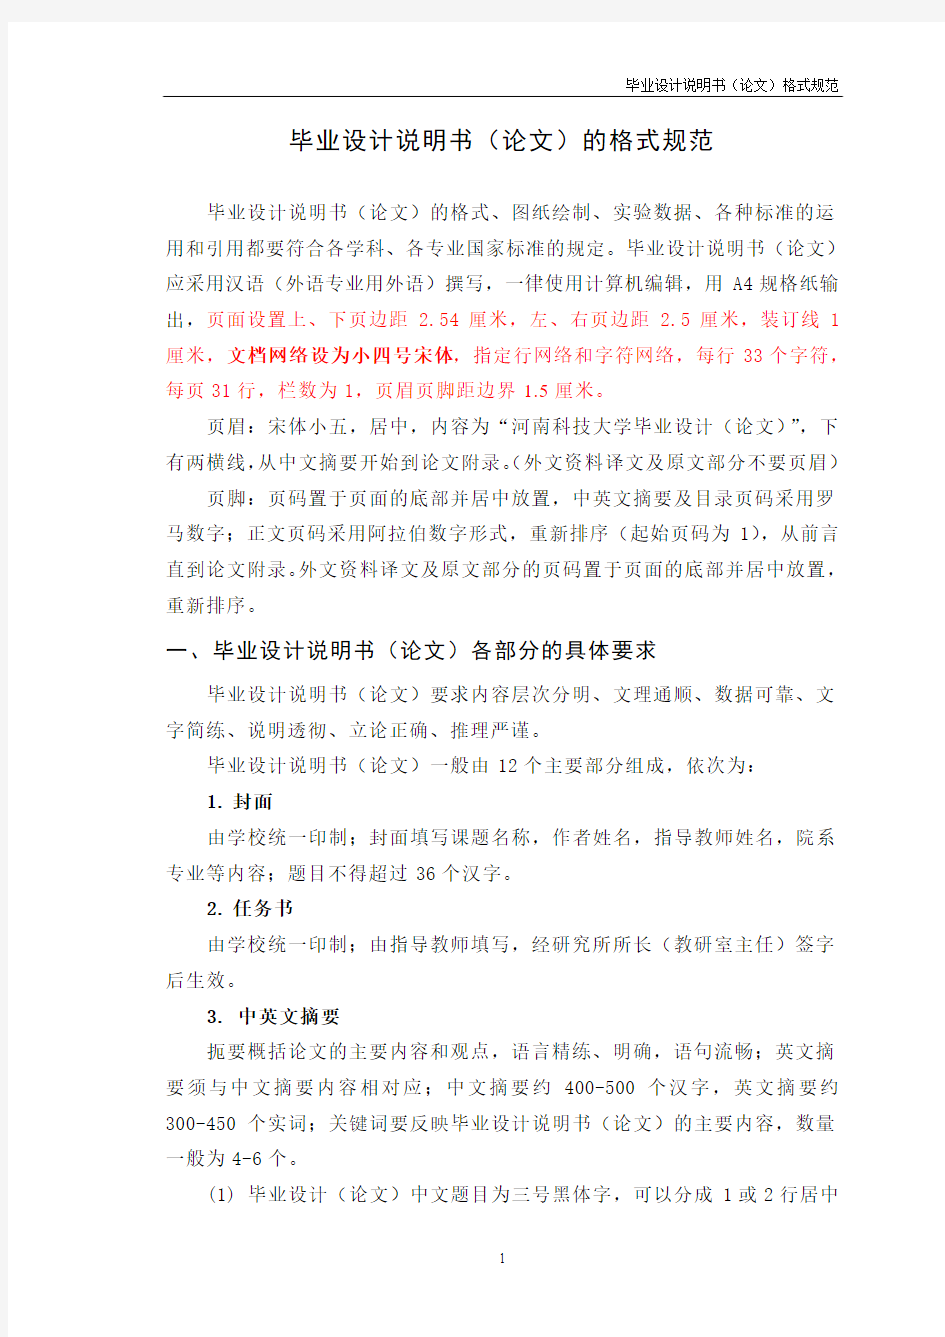 (重要)河南科技大学毕业设计说明书(论文)的格式规范